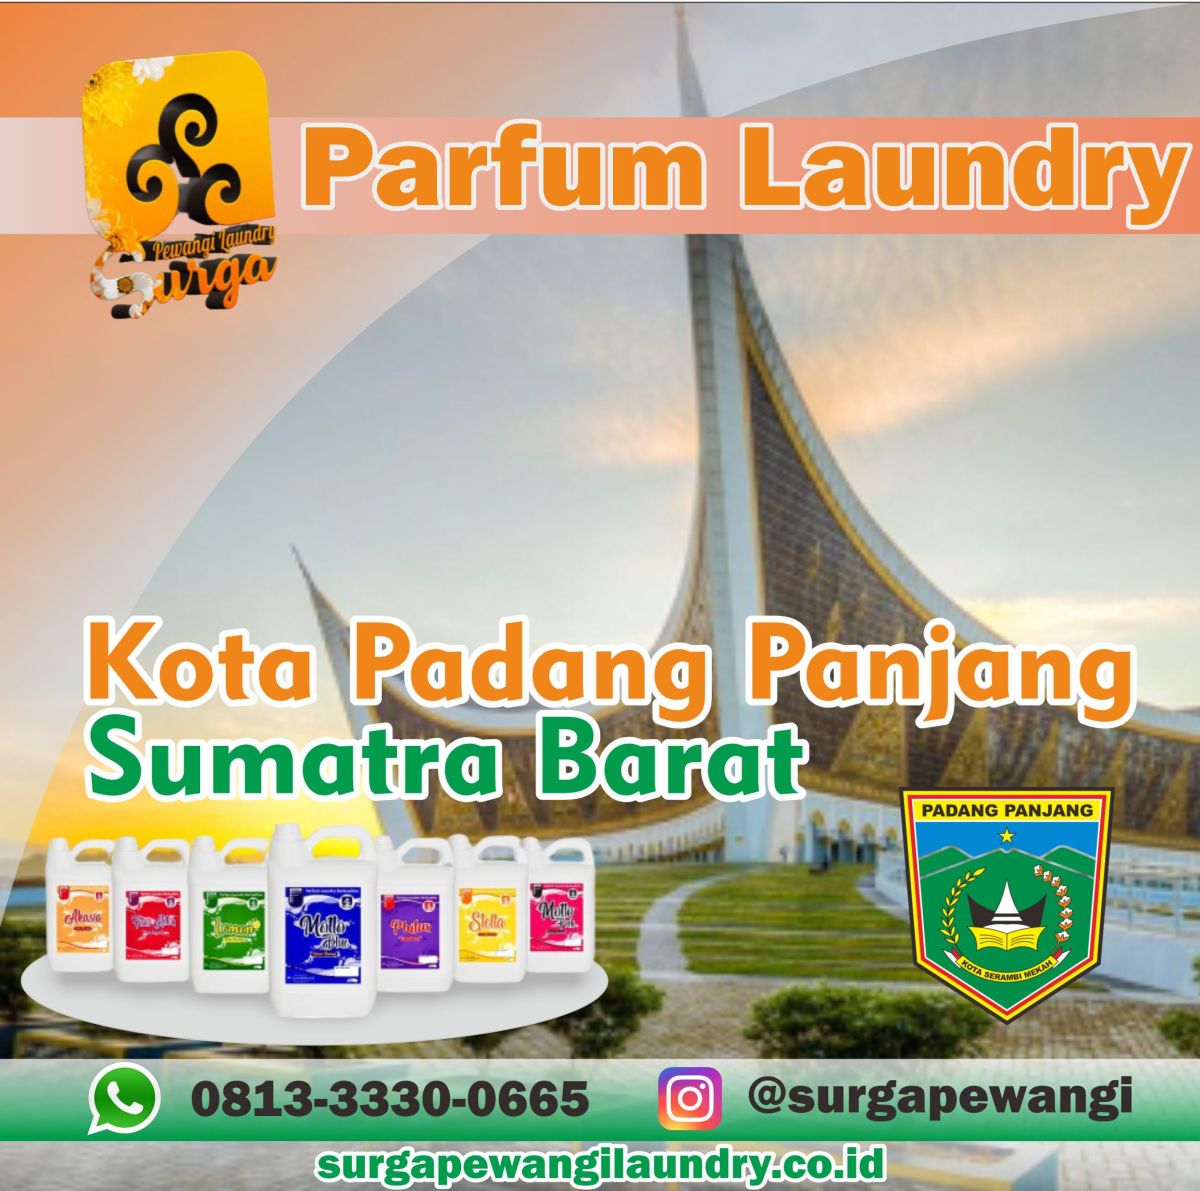 Parfum Laundry Kota Padang Panjang, Sumatra Barat